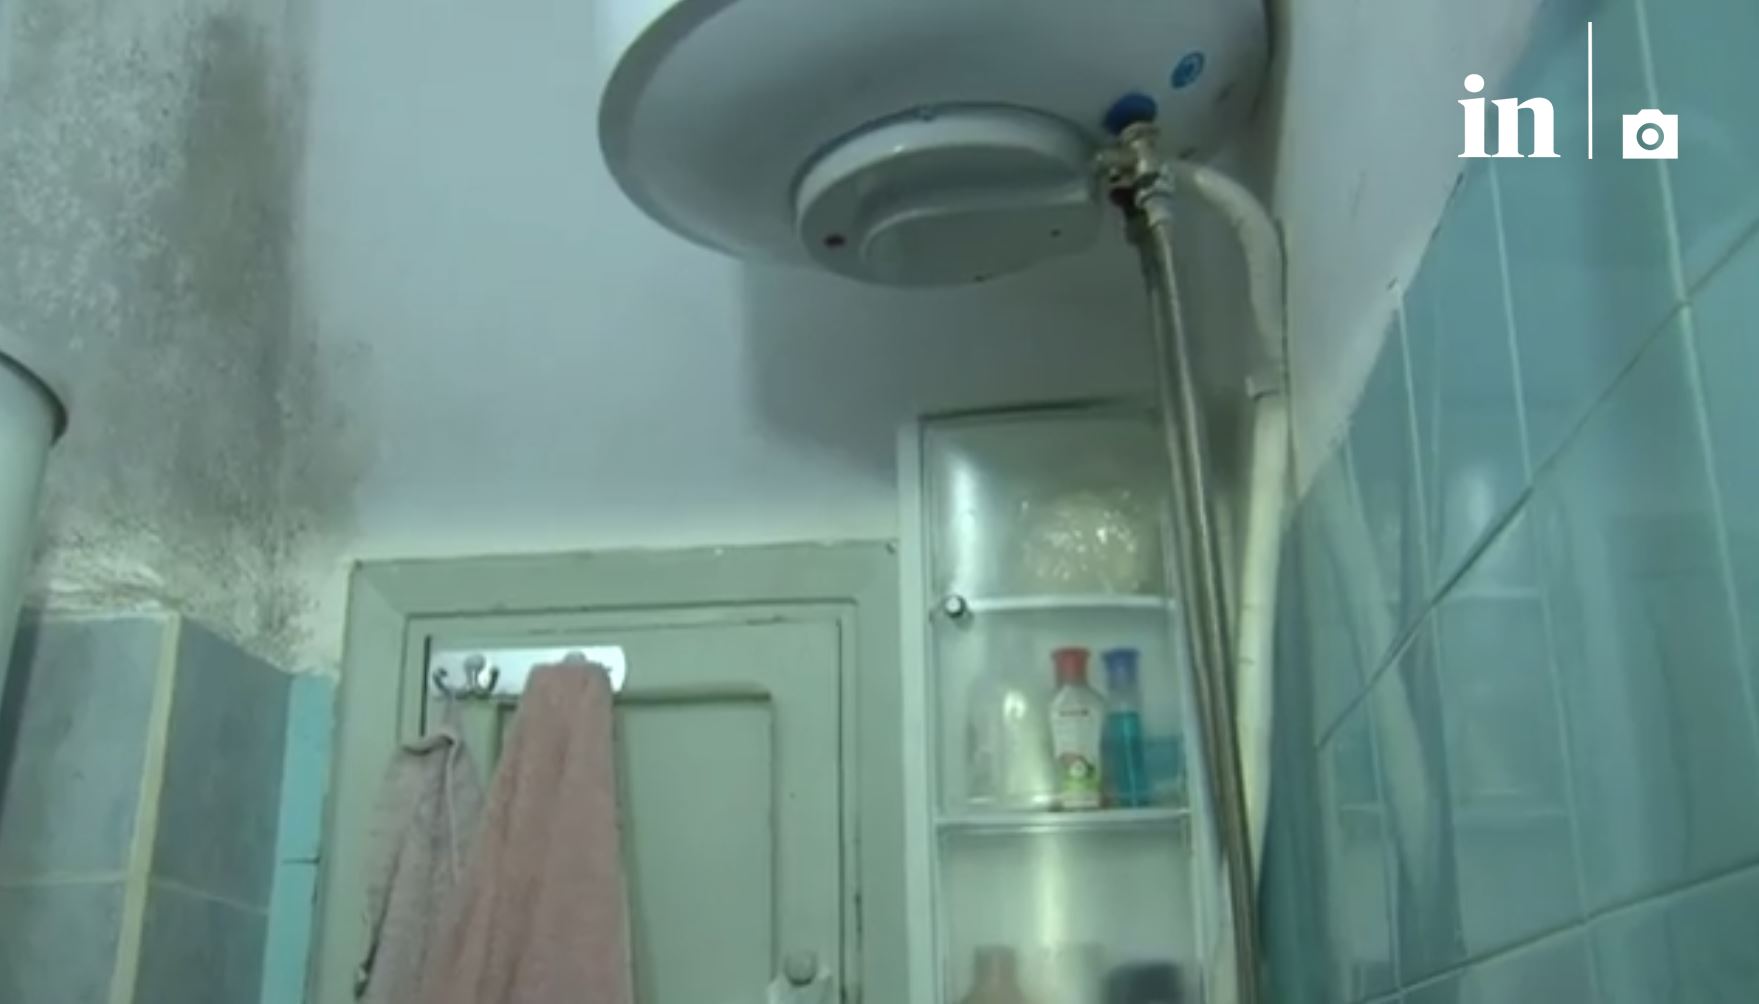 Φωτογραφίες - ντοκουμέντα από το μπάνιο όπου έπαθε ηλεκτροπληξία η 24χρονη